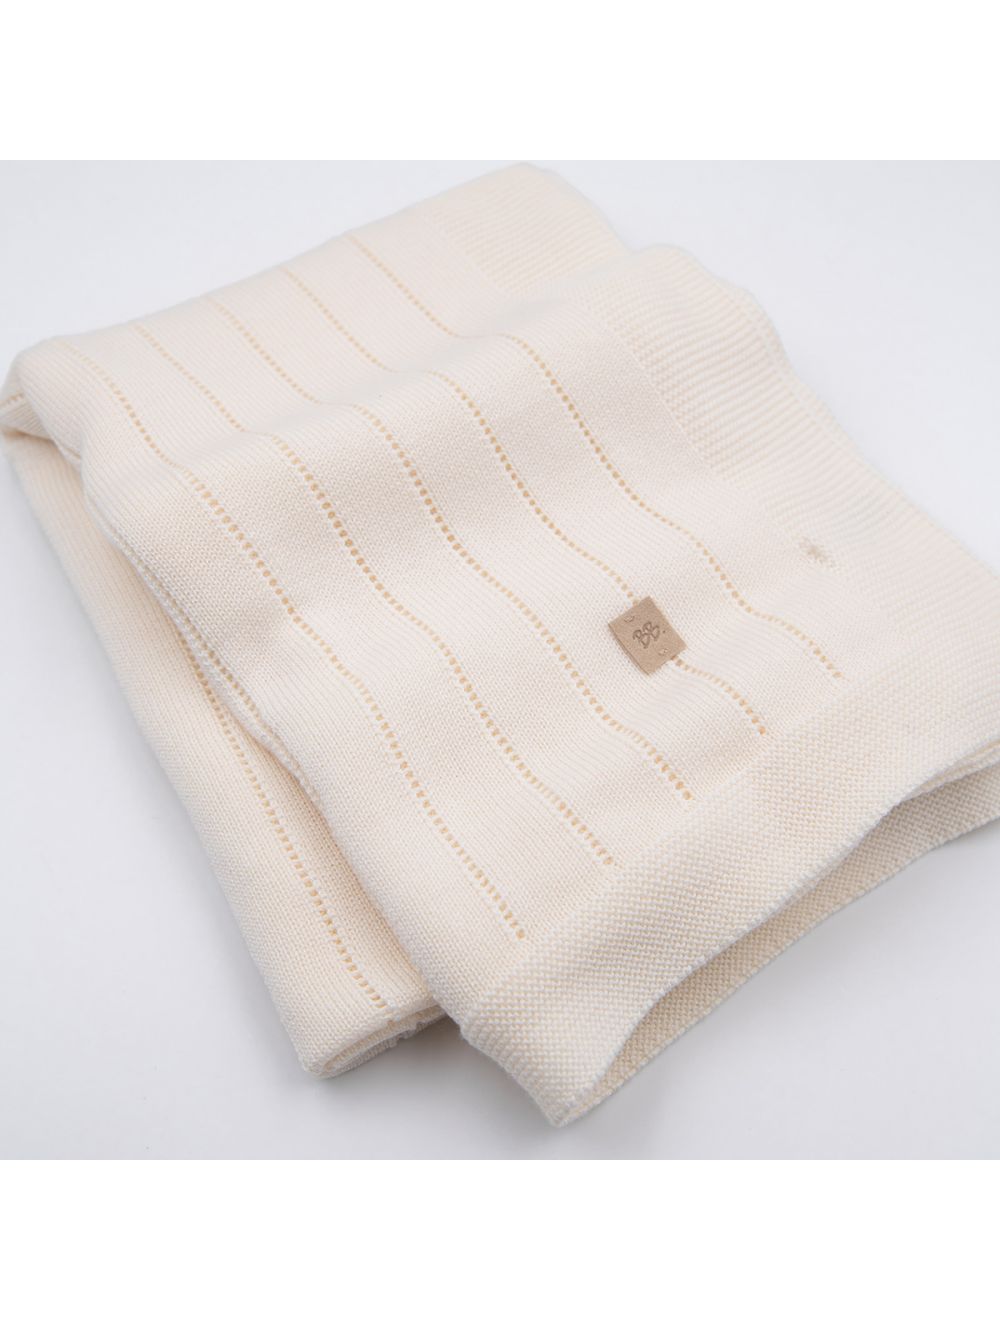 Die gestrickte, gestreifte Decke ist aus weichem, natürlichem Bambusstrick gefertigt